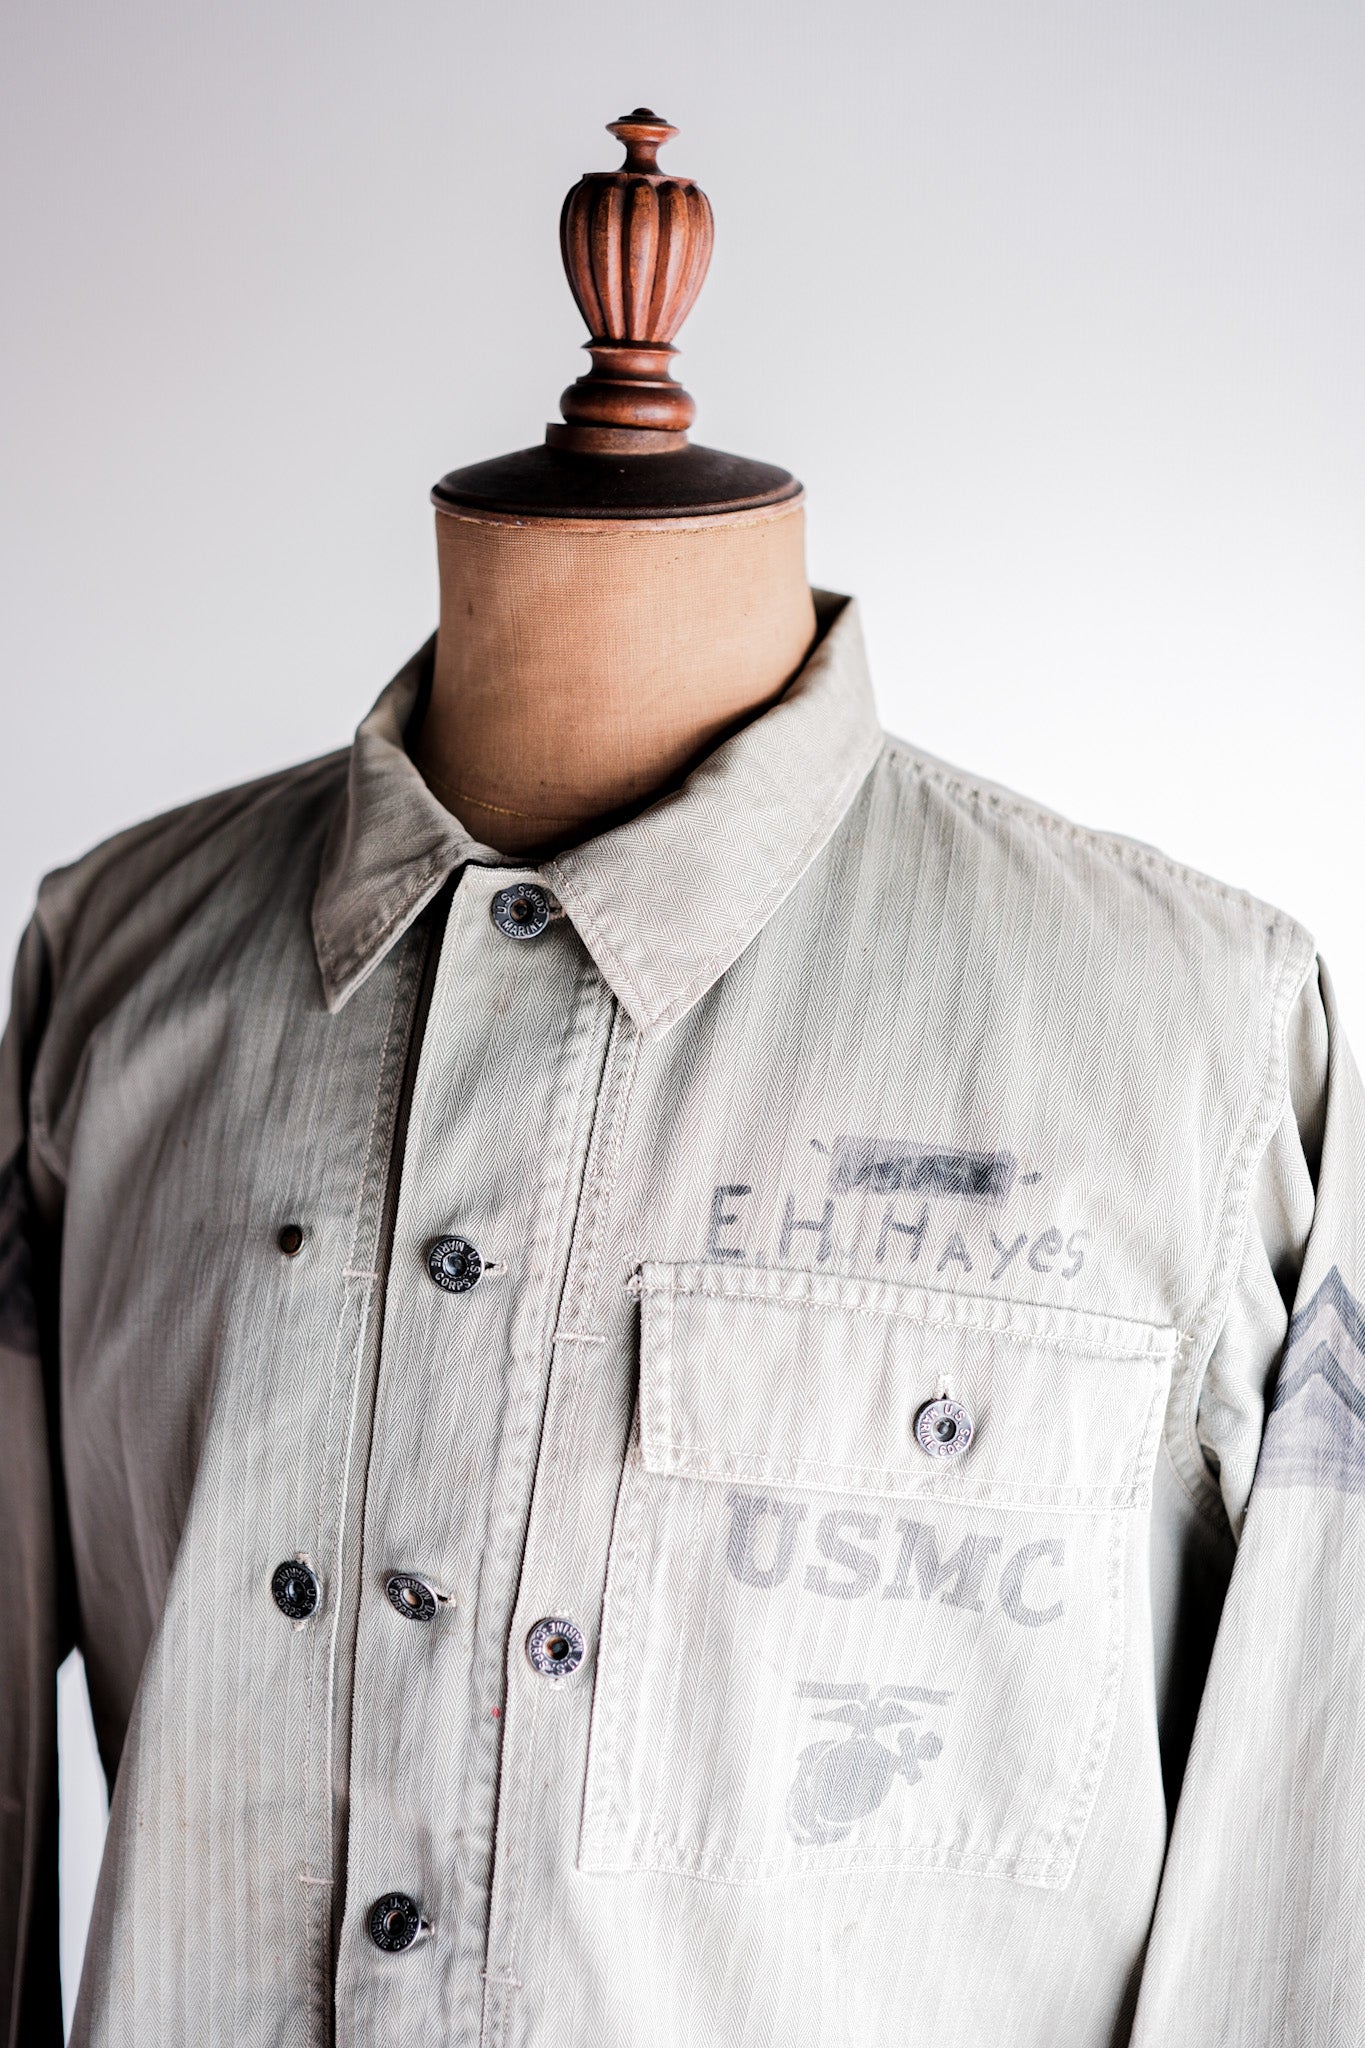 [〜40年代]wwⅱumedm.c p-44 HBT公用事業夾克“手繪”